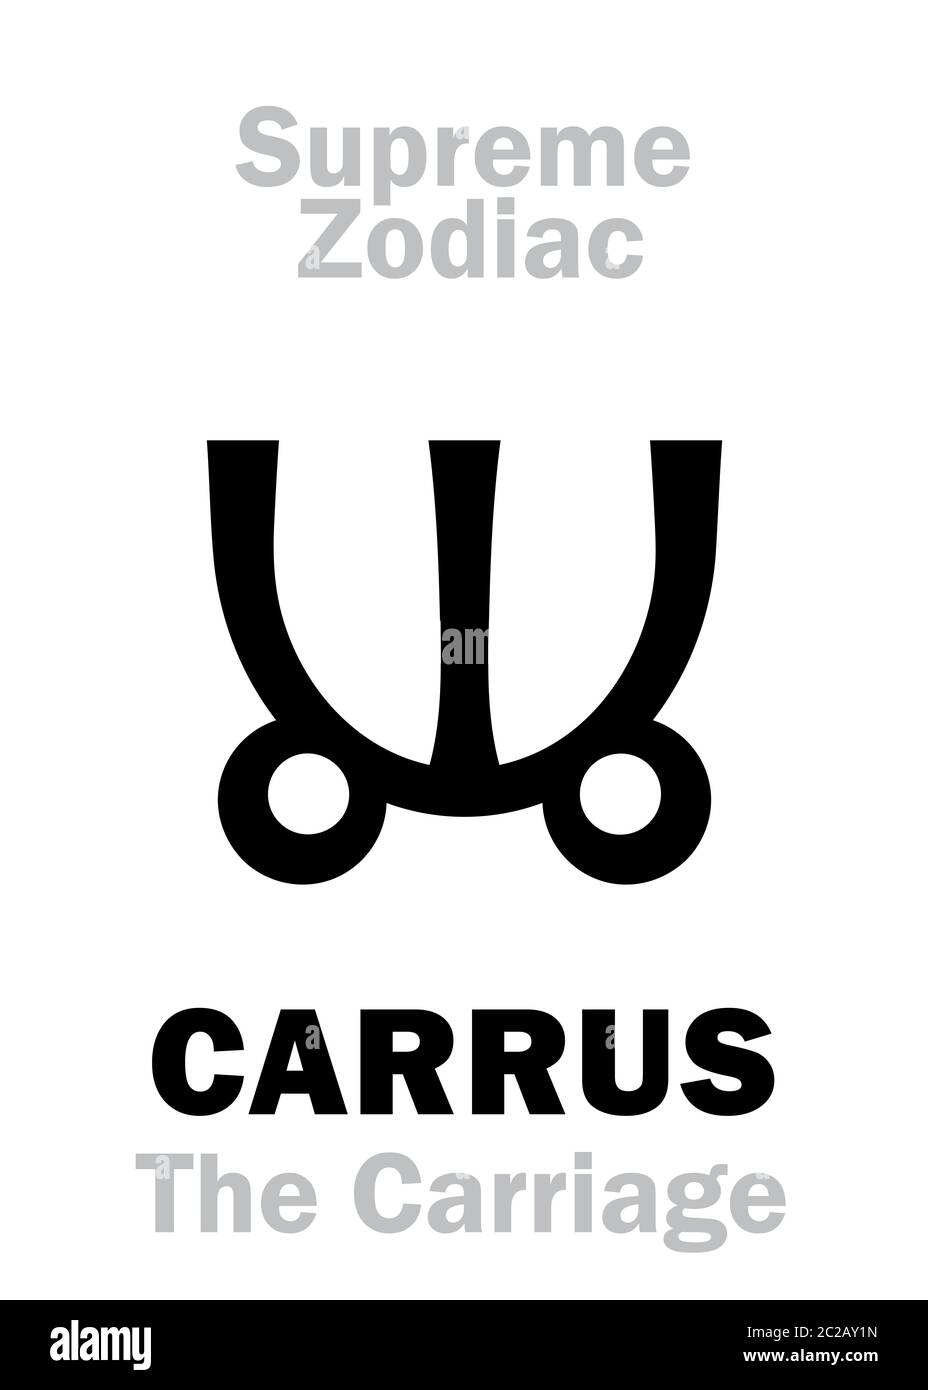 Astrología: Zodiaco Supremo: CARRUS (el carruaje / el Chariot) o Ursa mayor Foto de stock